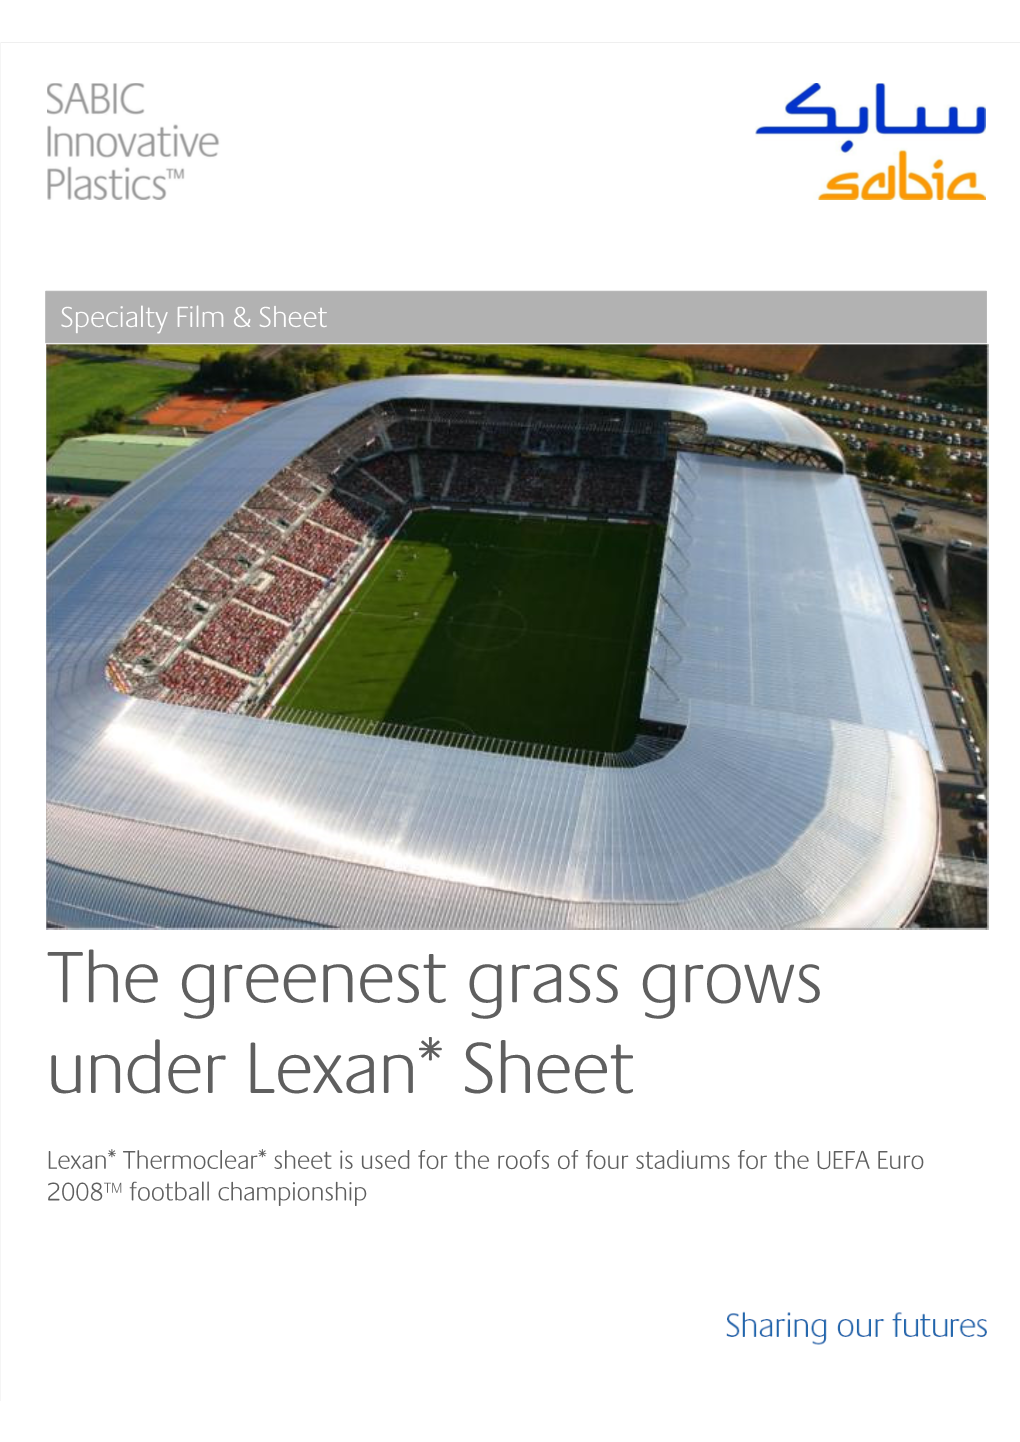 The Greenest Grass Grows Under Lexan* Sheet